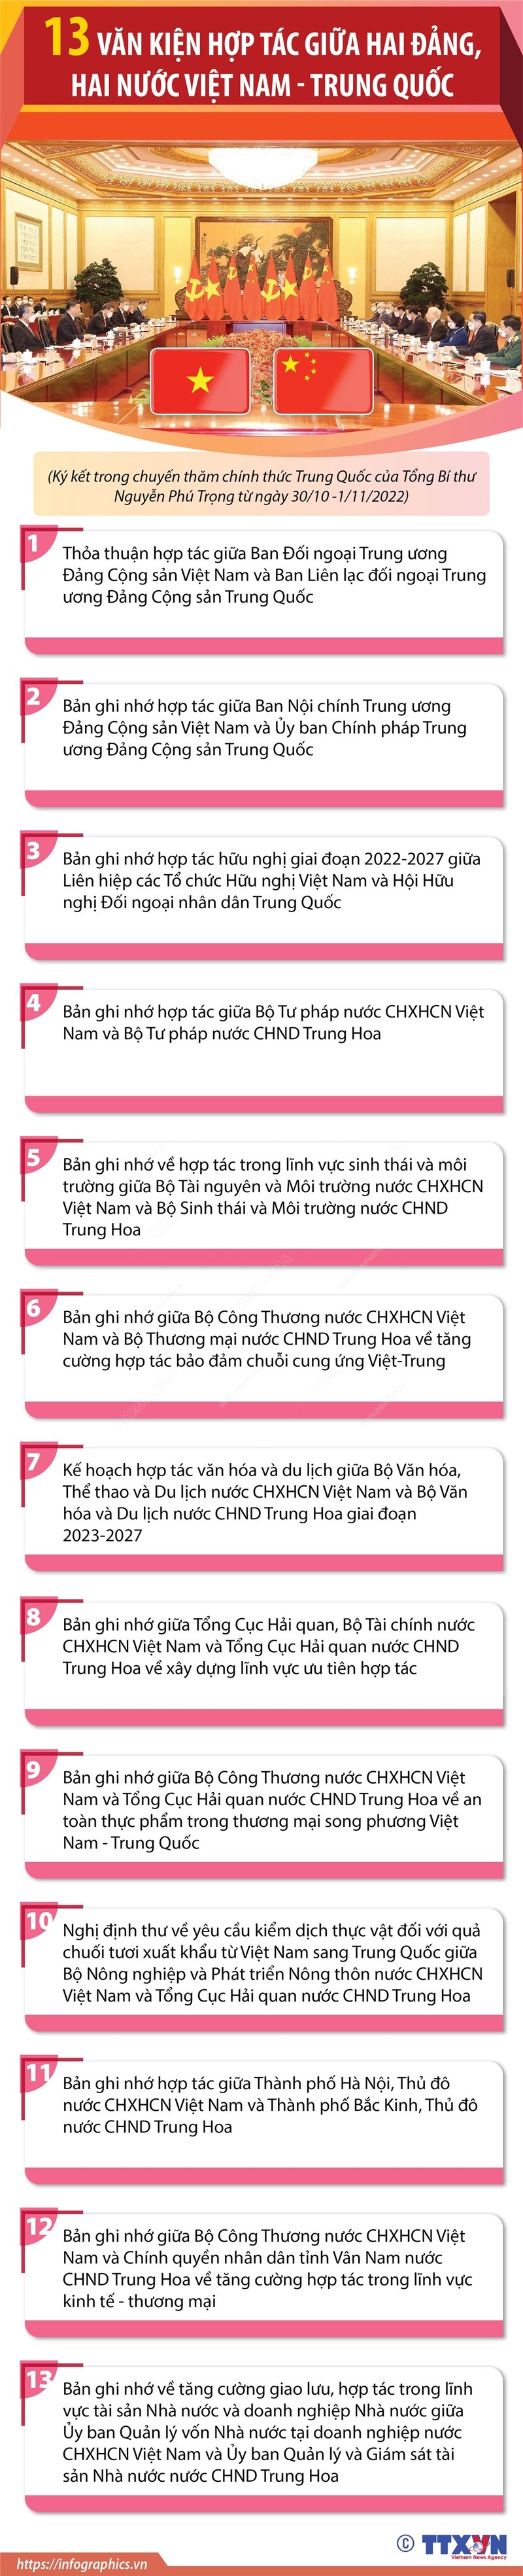 Nhung dau an trong chuyen tham chinh thuc Trung Quoc cua Tong Bi thu Nguyen Phu Trong-Hinh-8